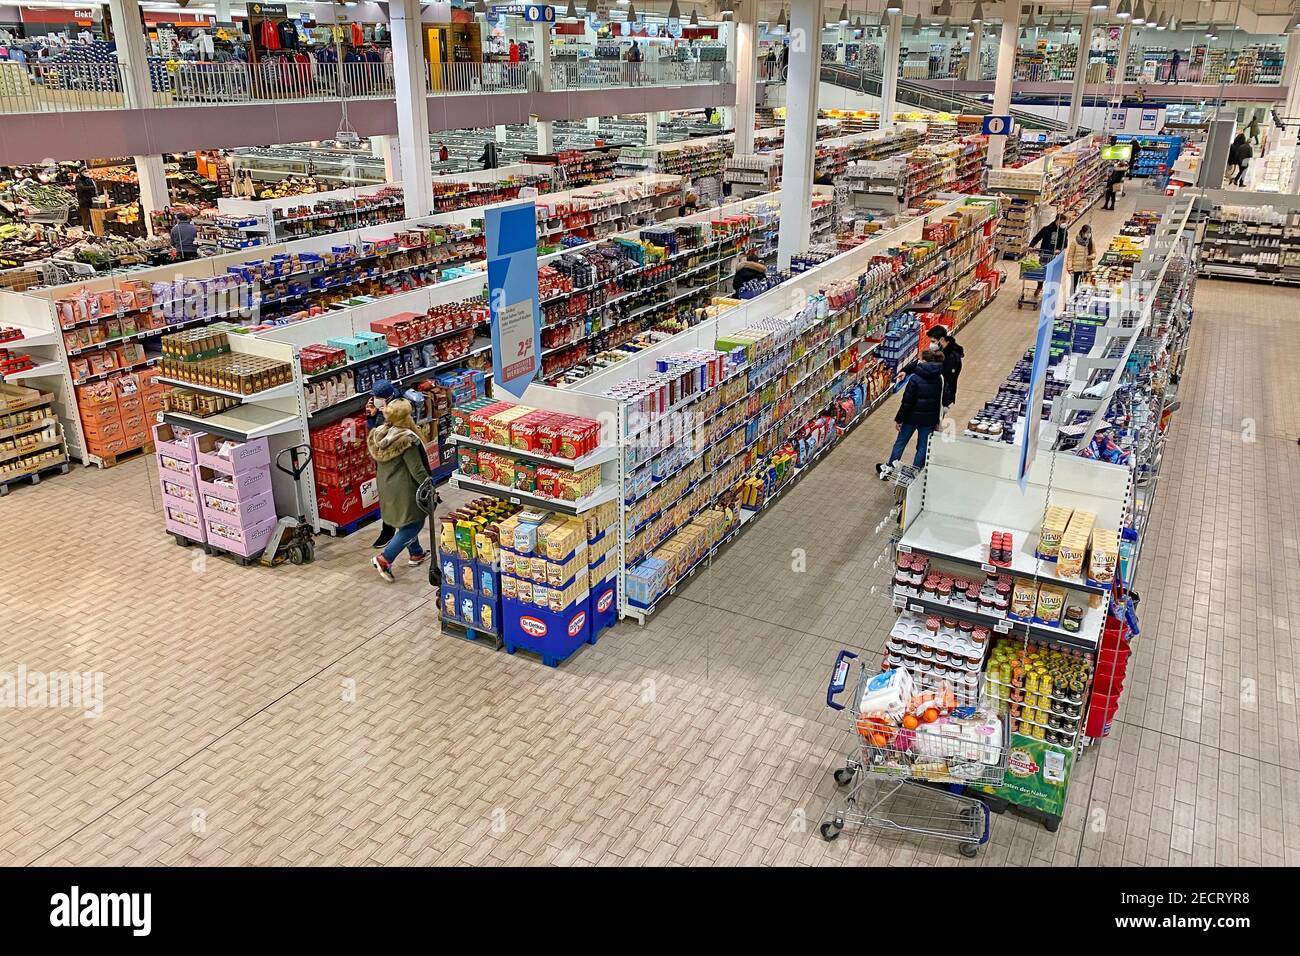 Topic Bild Supermarkt Kette Real. Real- rund 30 Geschäfte sind nach dem  Verkauf geschlossen. Nur wenige Kunden mit FFP2 Mundschutz, Masken im Real  Markt, Supermarkt in München Freimann. Weltweite Nutzung Stockfotografie -  Alamy